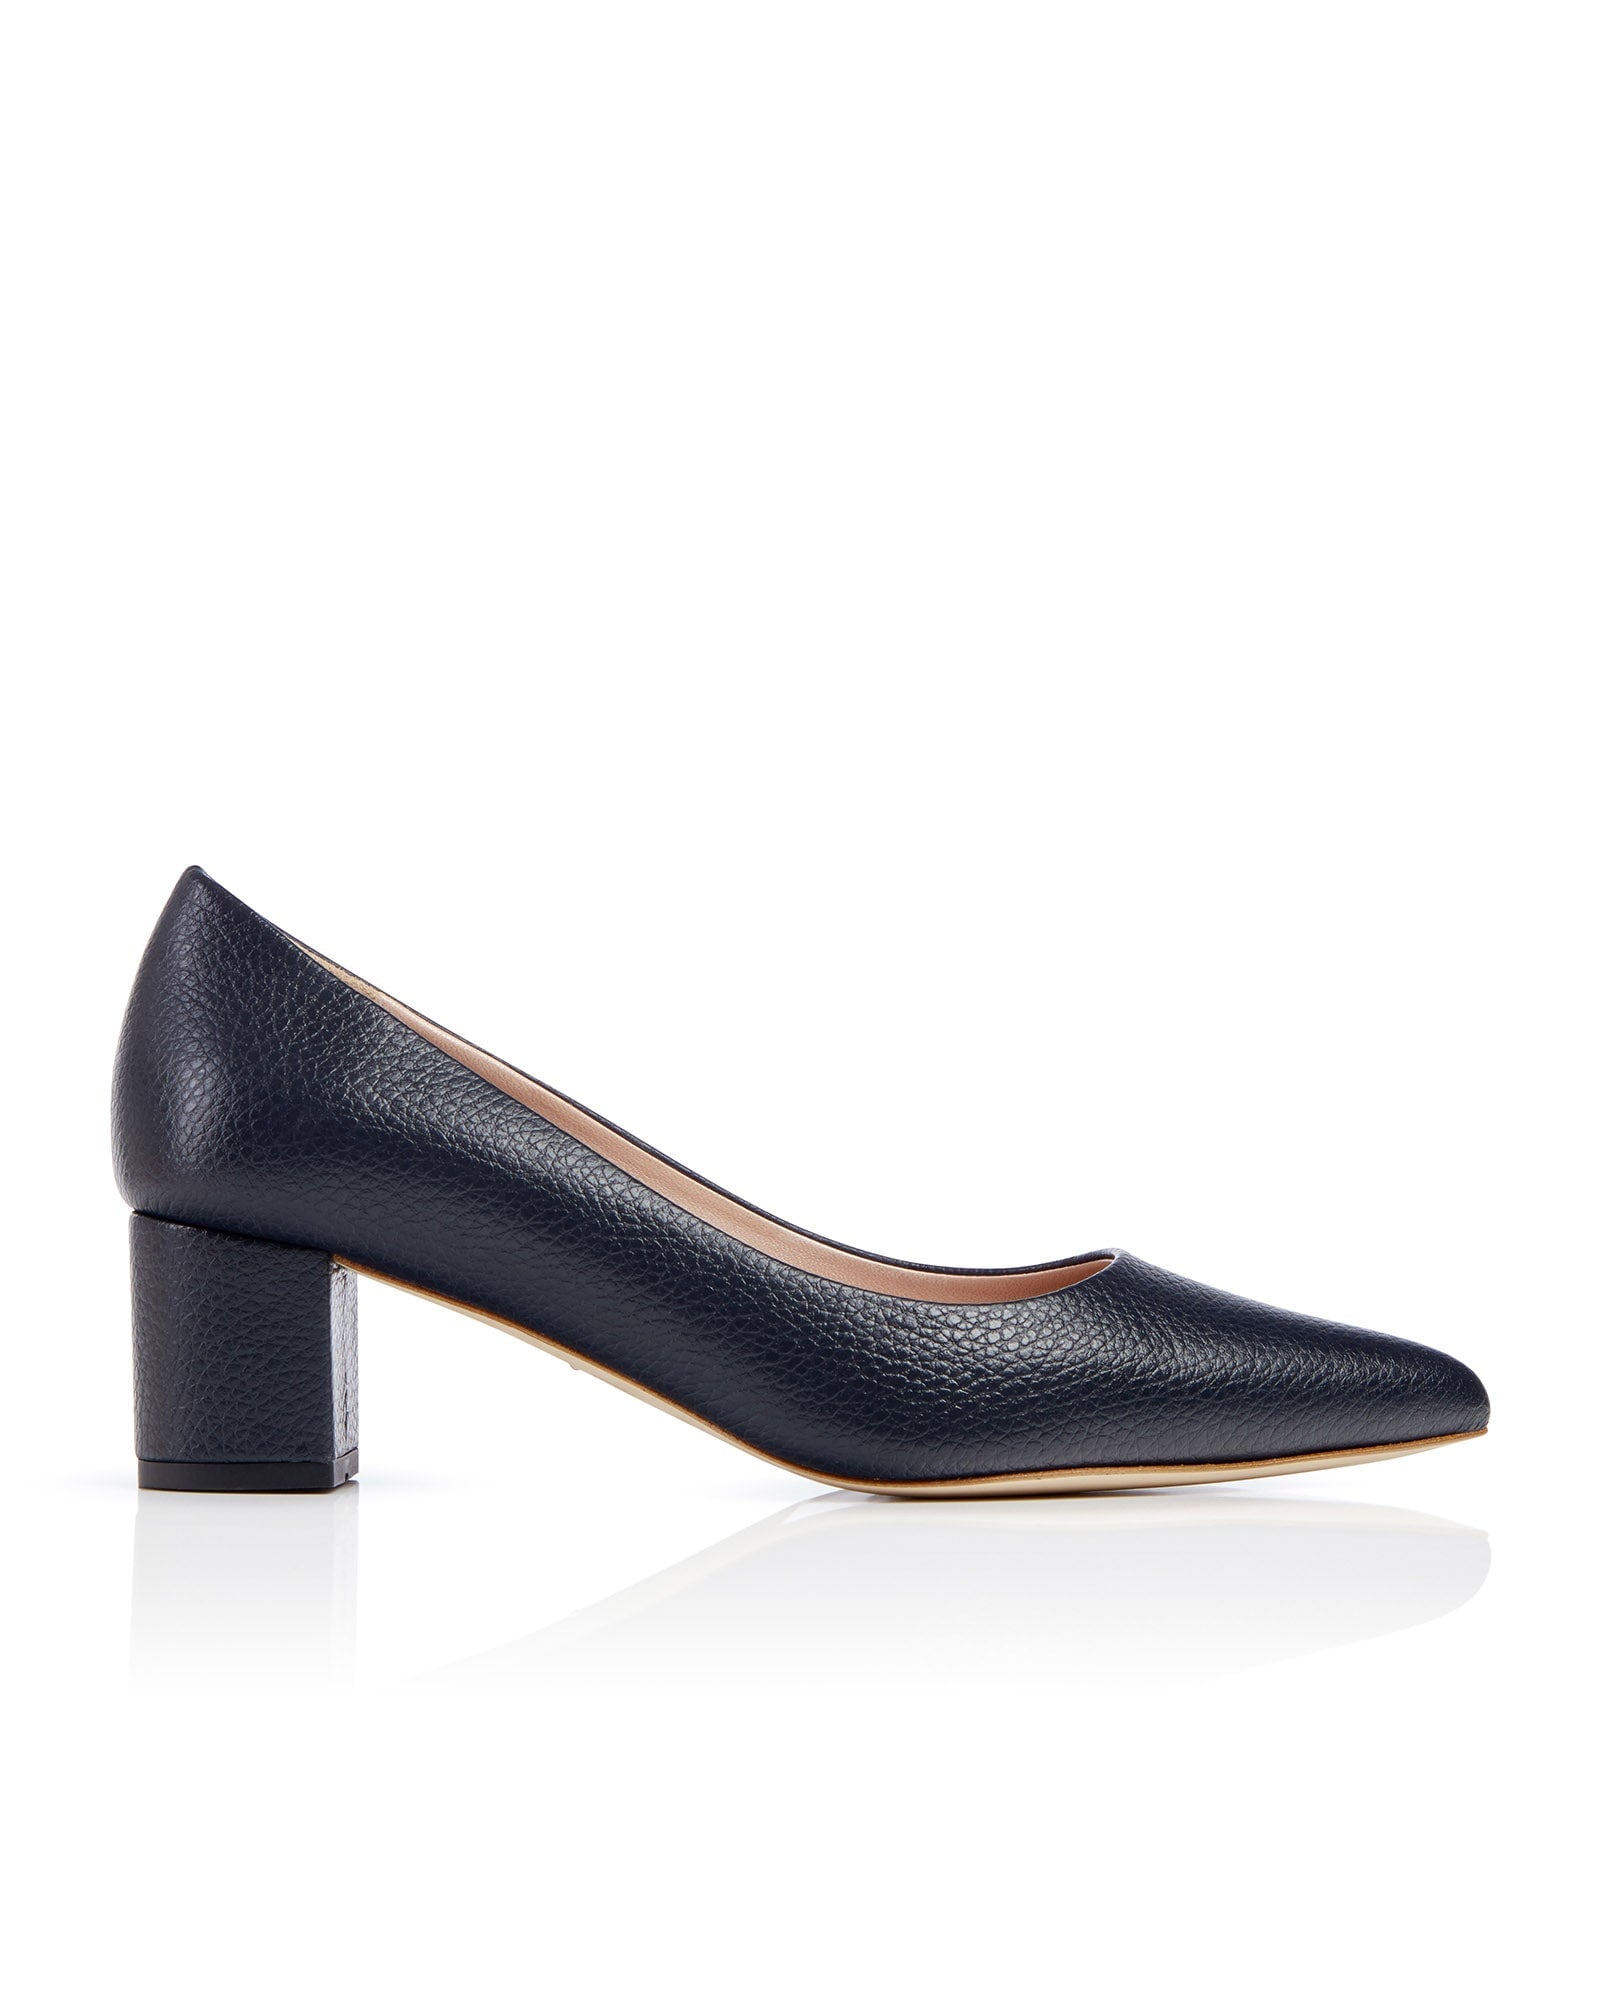 Josie Kitten Textured Dark Navy Leather Fashion Shoe Pointed Block Heel Court Shoes  image